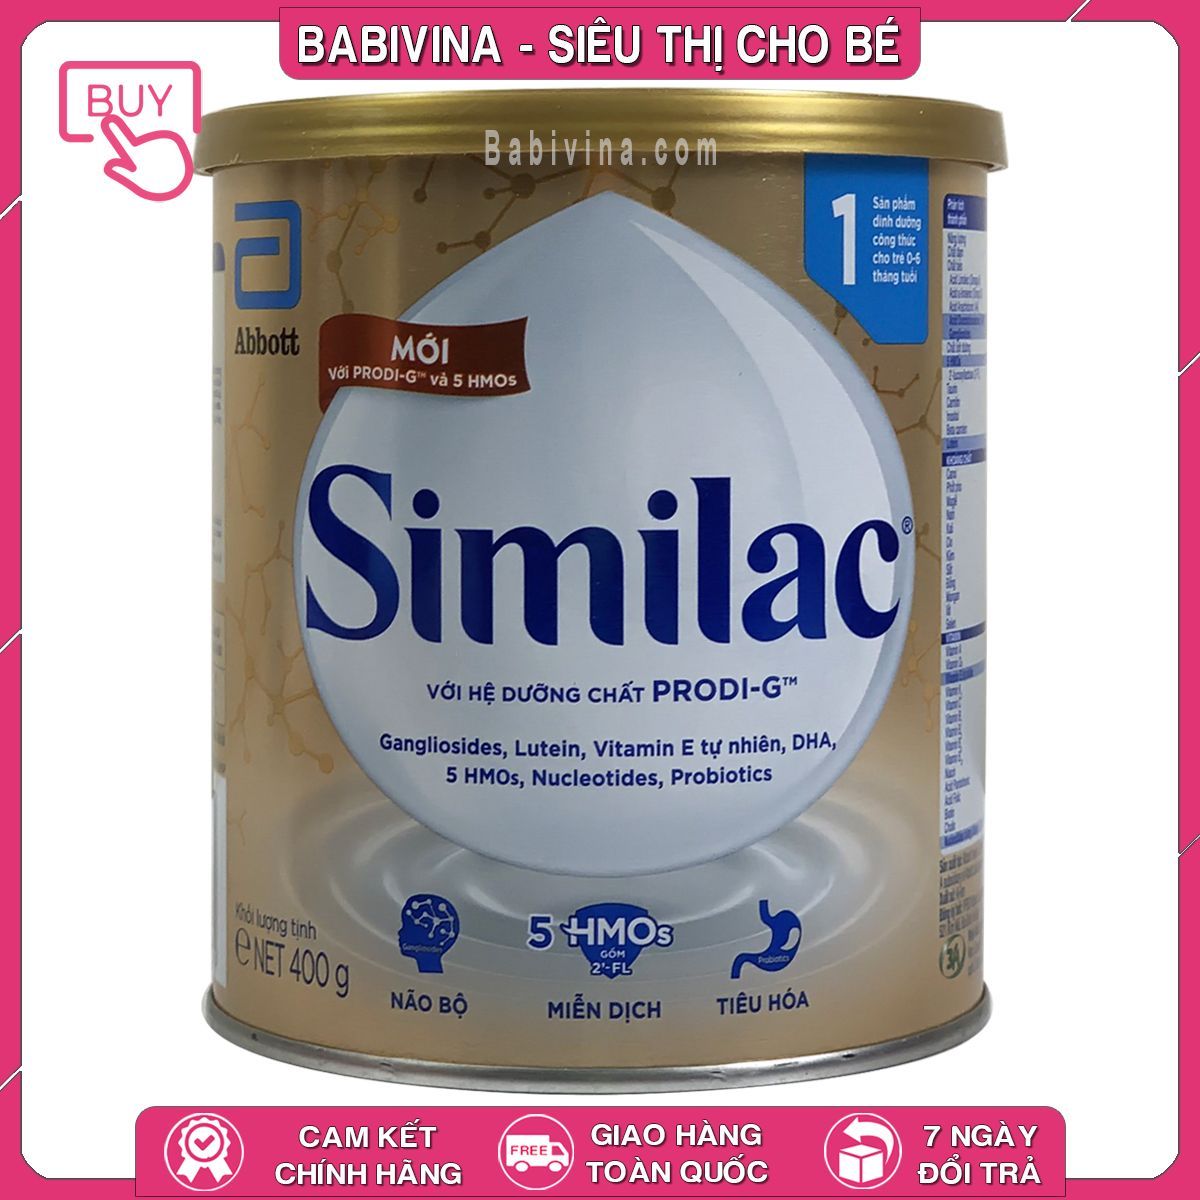 Sữa Similac Total Protection 1 (5 HMO+) 400g (0 - 6 tháng) giá tốt